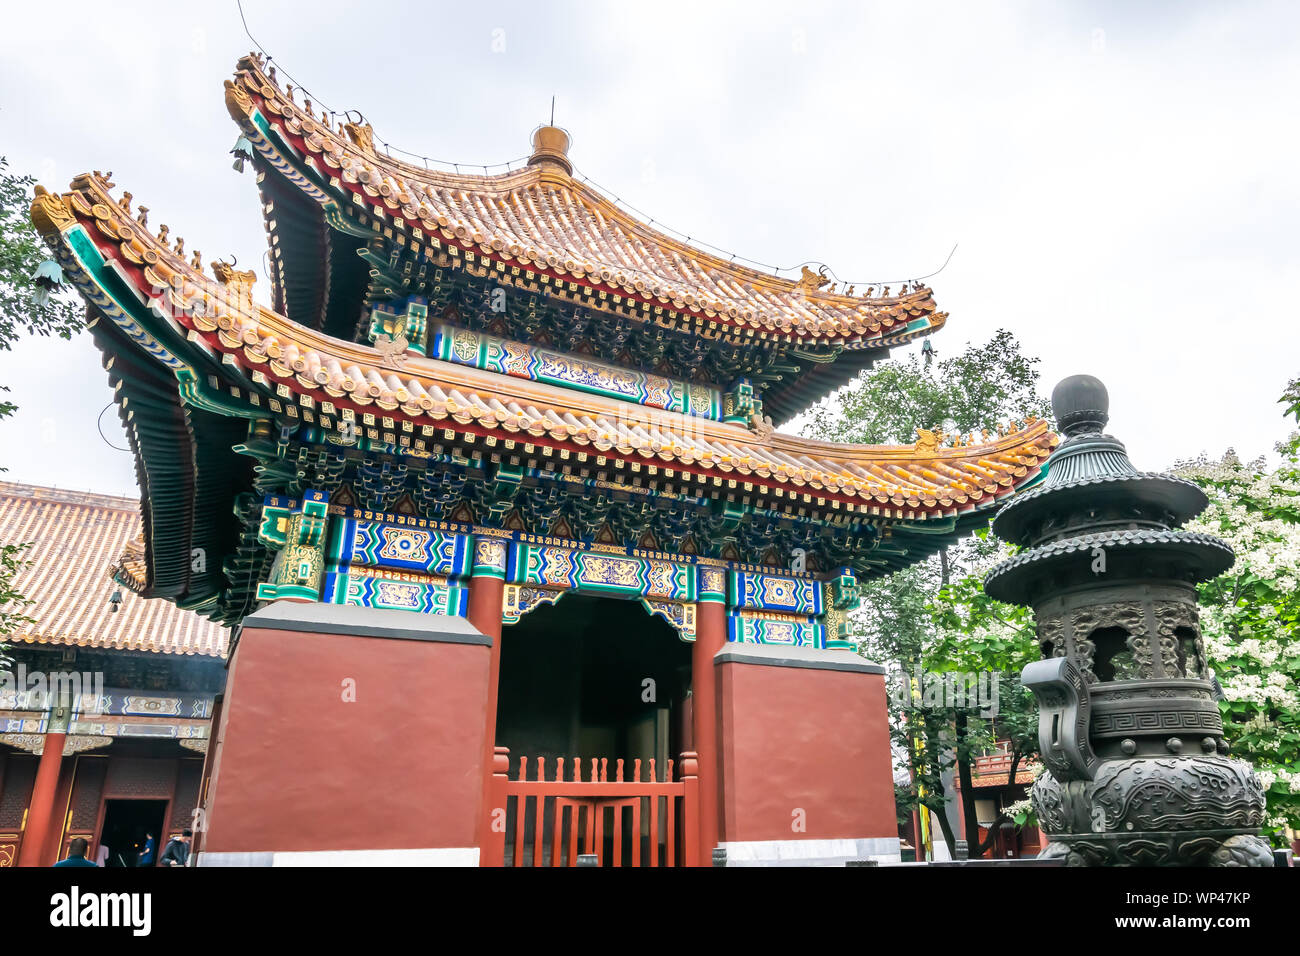 Il Tempio dei Lama (Yonghegong), il tempio e il monastero della scuola Gelug del buddhismo tibetano situato nel distretto di Dongcheng a Pechino, Cina Foto Stock